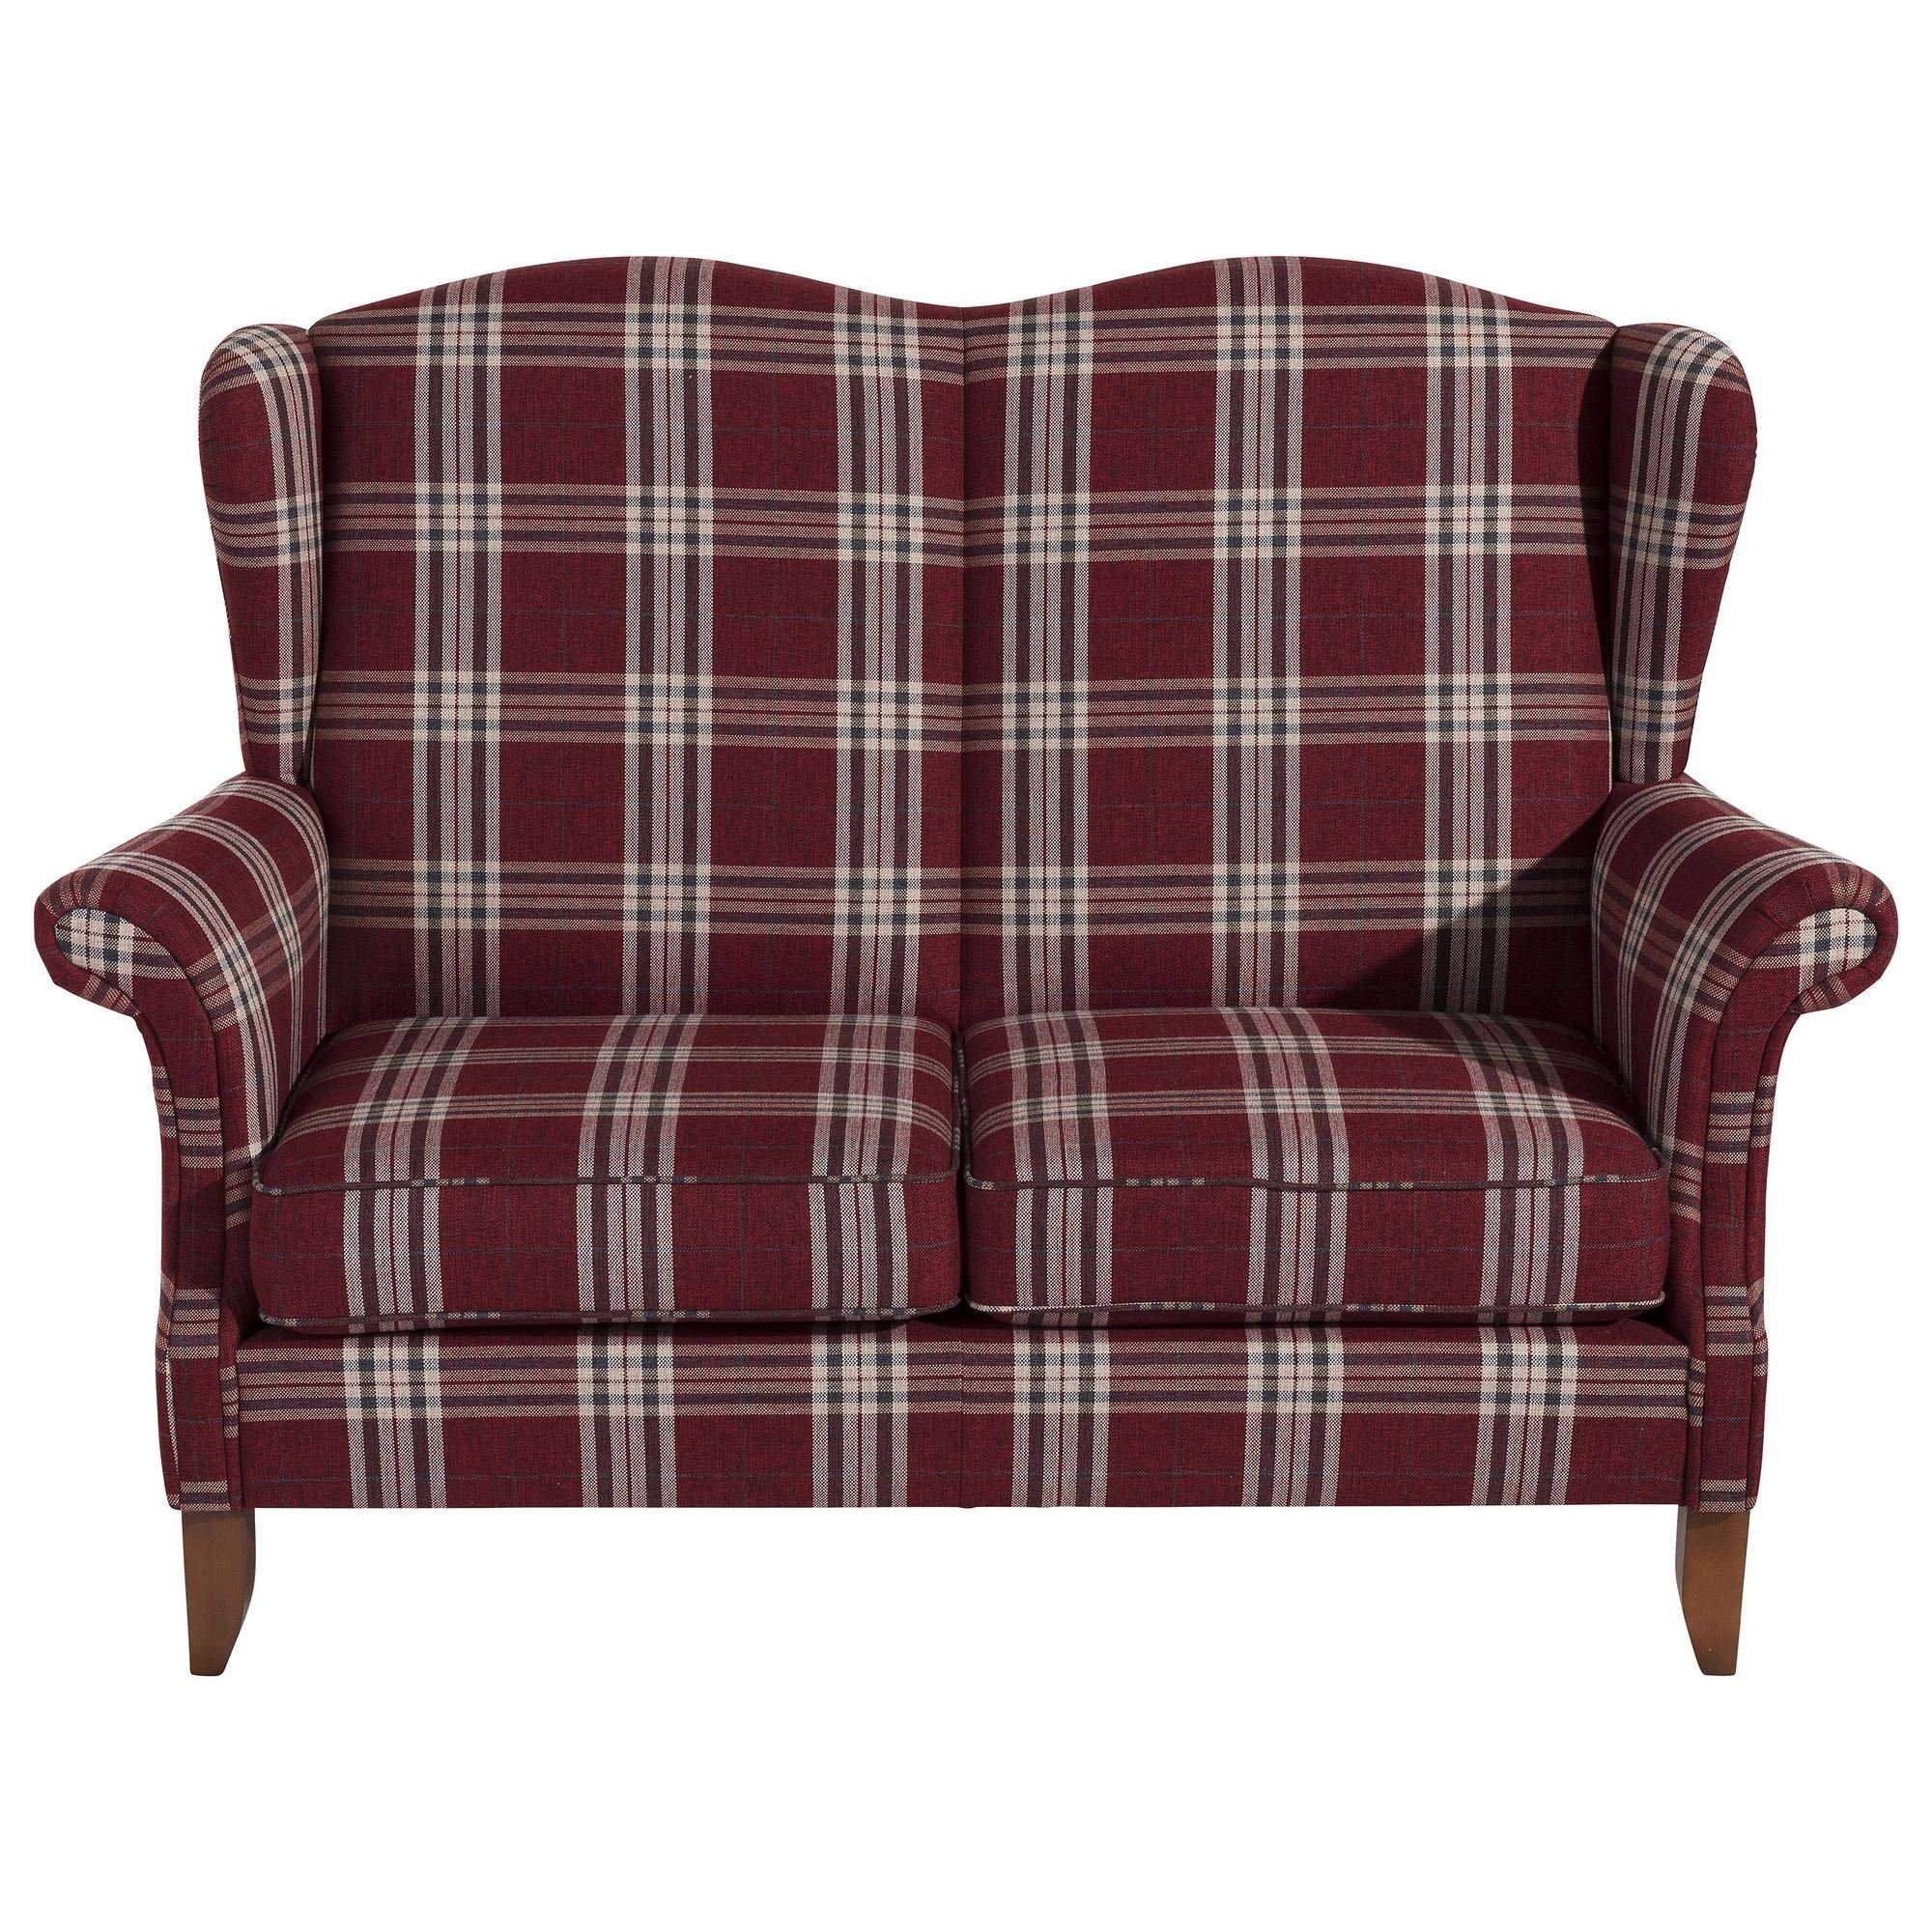 Katria 2-Sitzer Sitz Sofa Sofa Kostenlosem 58 Flachgewebe Bezug inkl. Kessel Versand Buche verarbeitet,bequemer Teile, nussb, 1 Sparpreis aufm hochwertig